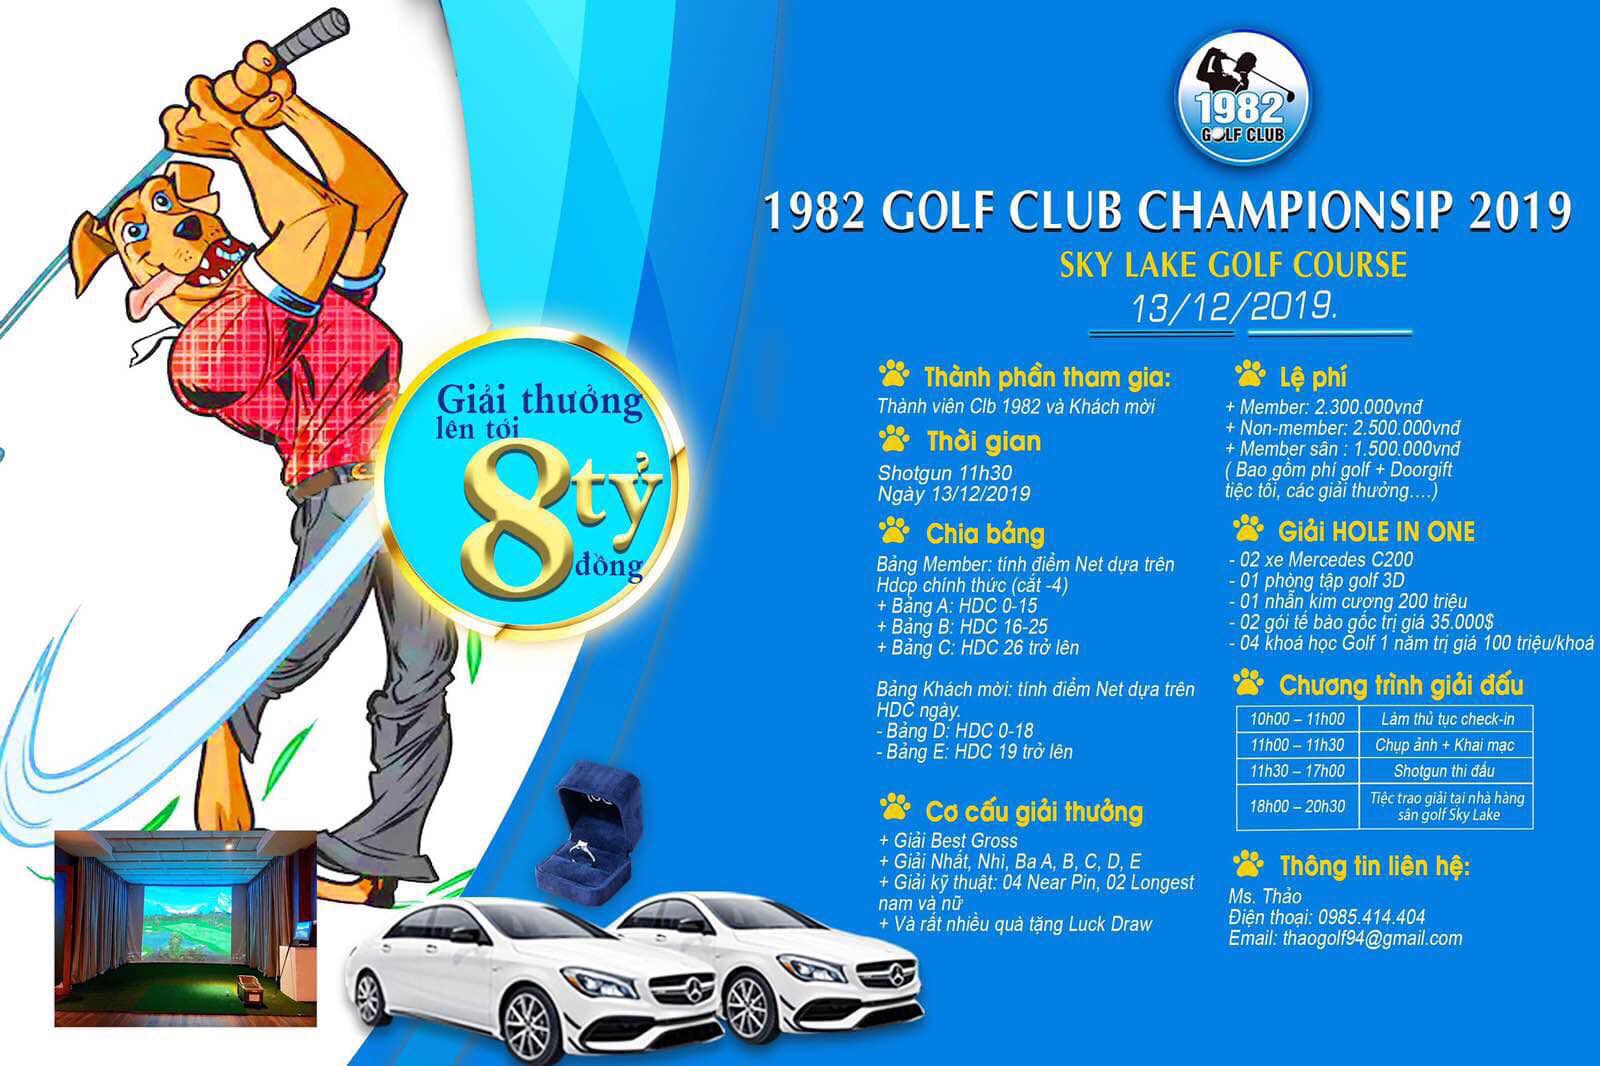 Gần 140 golfer tranh tài ở giải 1982 Golf Club Championship 2019